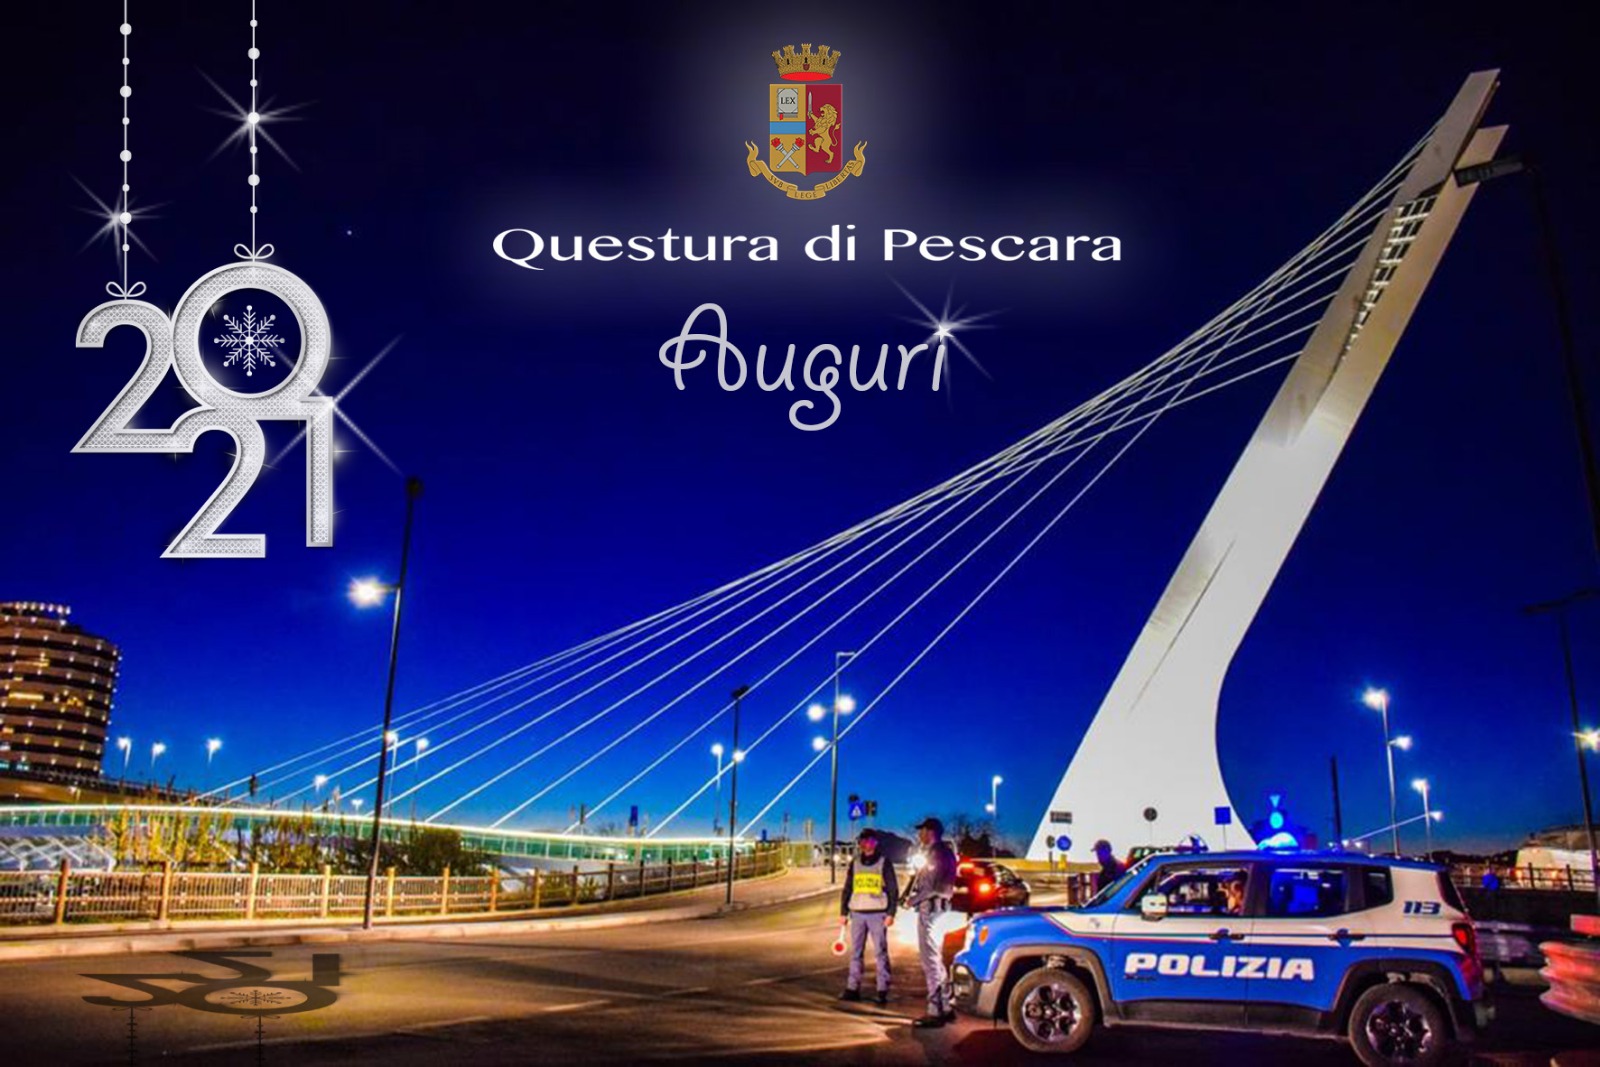 Questura di Pescara: bilancio attività anno 2020